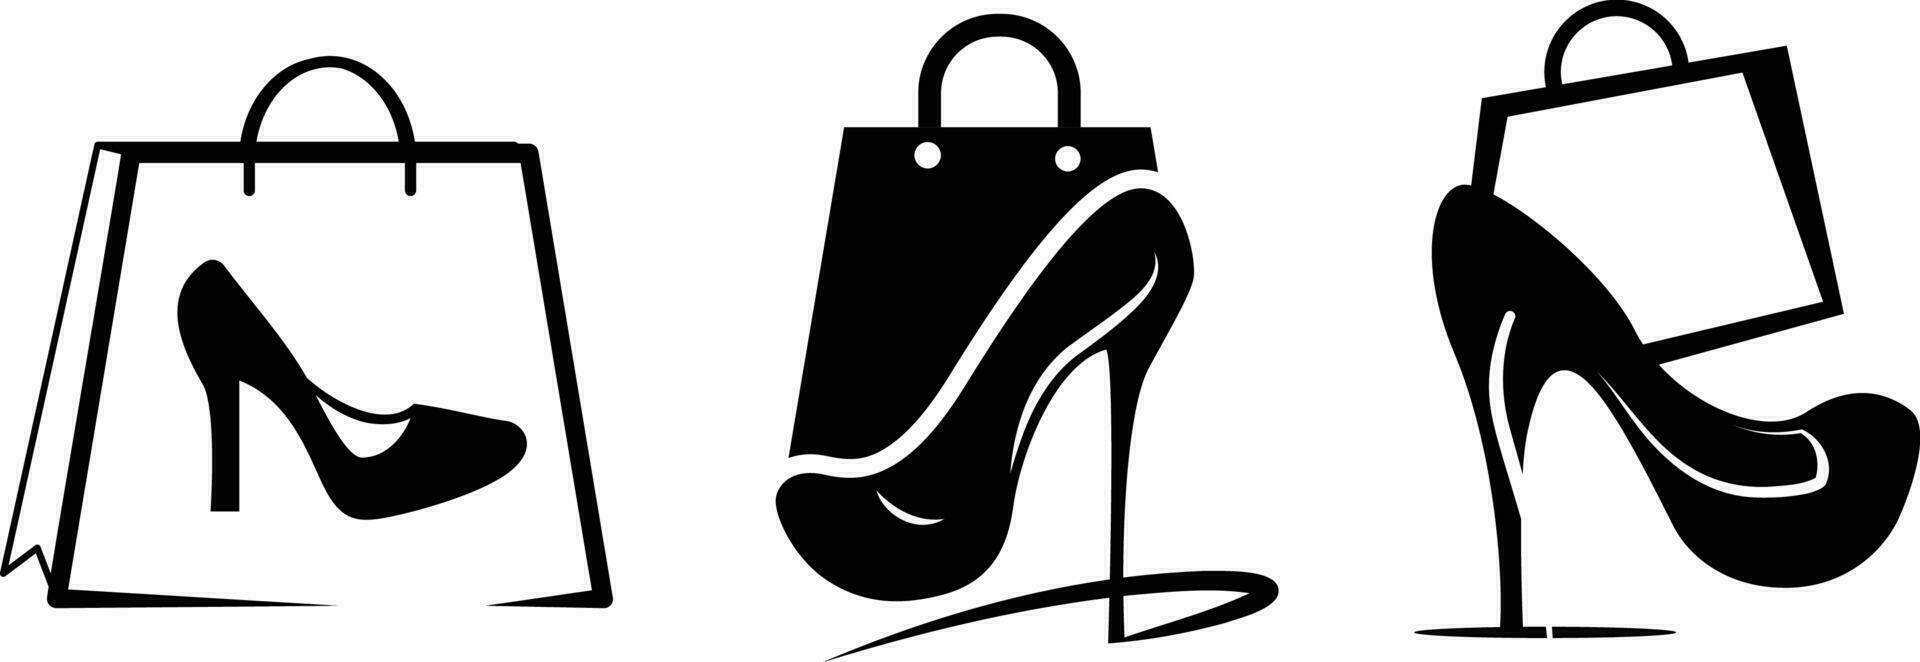 ladies heels or footwear and bag set online store icon vector clip art.